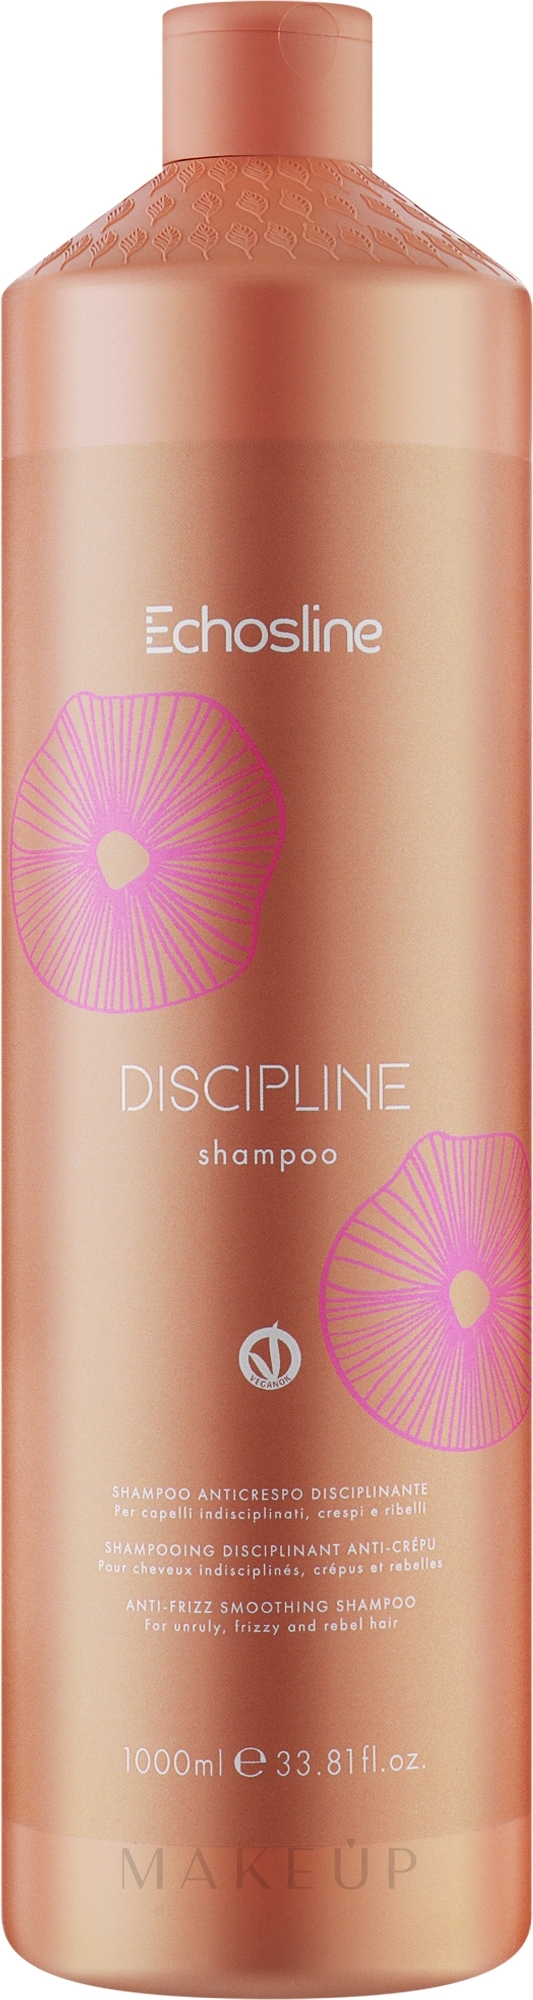 Shampoo für poröses Haar - Echosline Discipline Shampoo — Bild 1000 ml